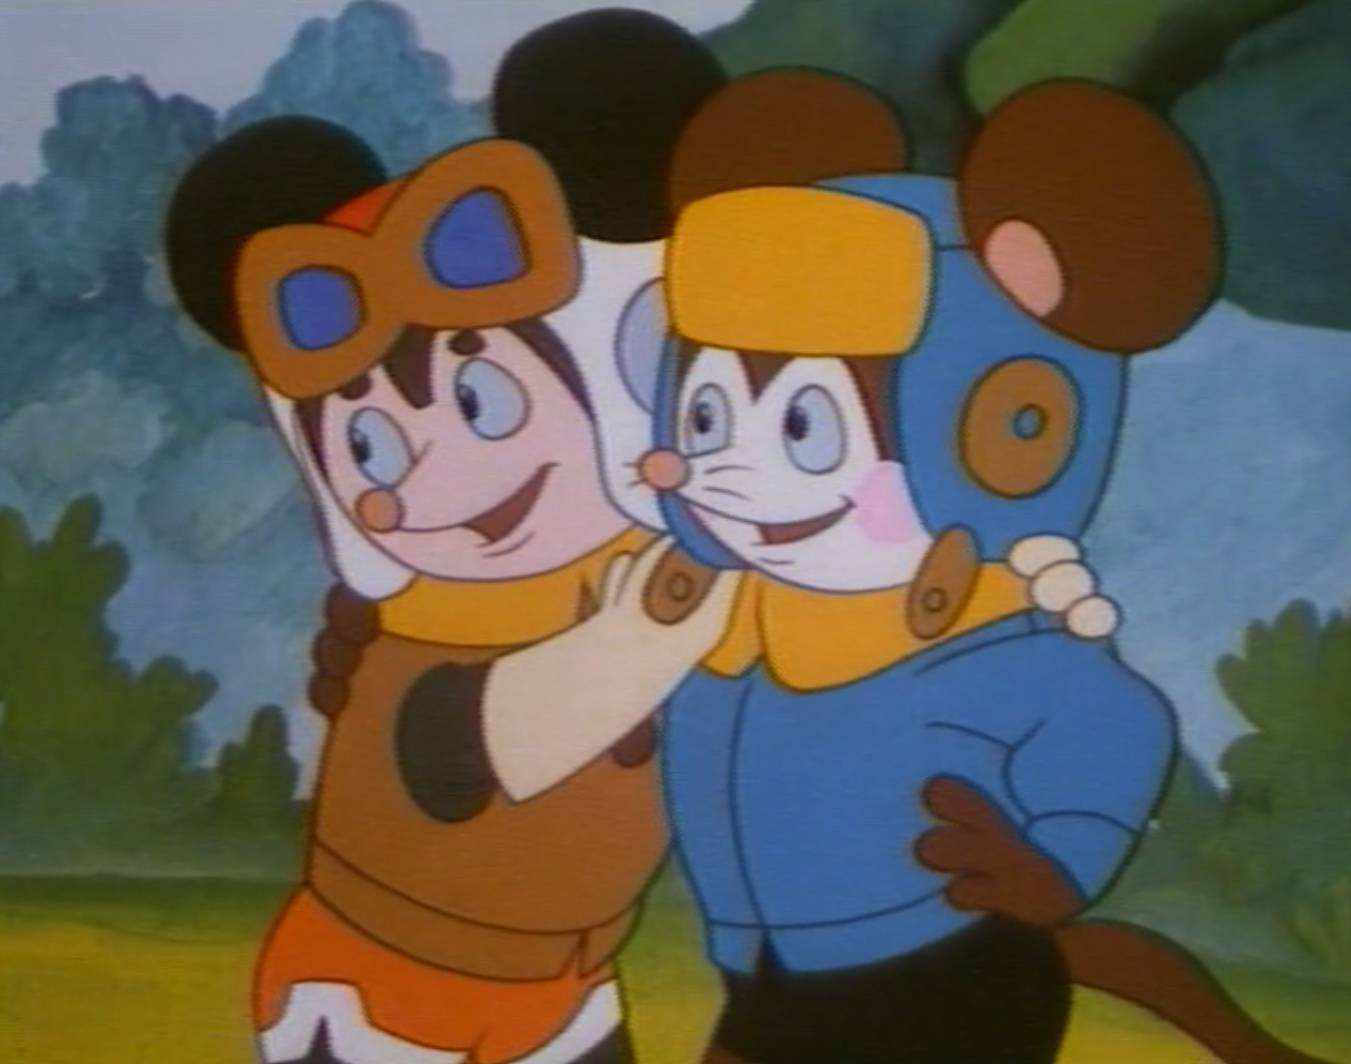 《舒克和贝塔》中两只正面形象的小老鼠